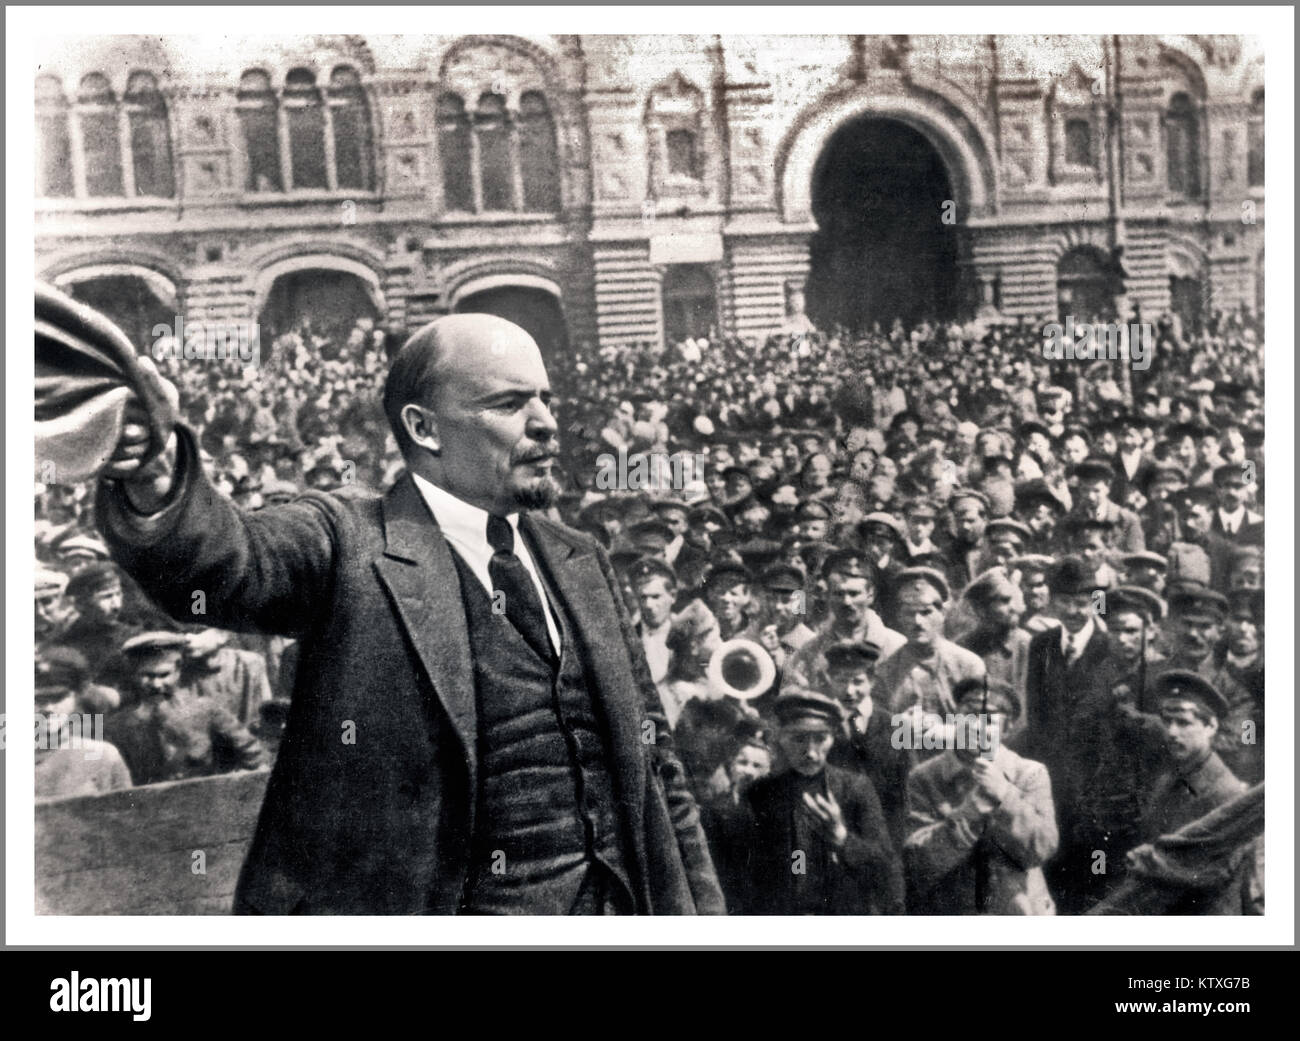 LENIN del discorso pubblico folla foto storica del Bolshevik Vladimir Lenin Rivoluzione Russa di ottobre 1917 (dal calendario russo), è stato uno dei momenti più significativi nella storia moderna della caduta della dinastia dei Romanov Foto Stock